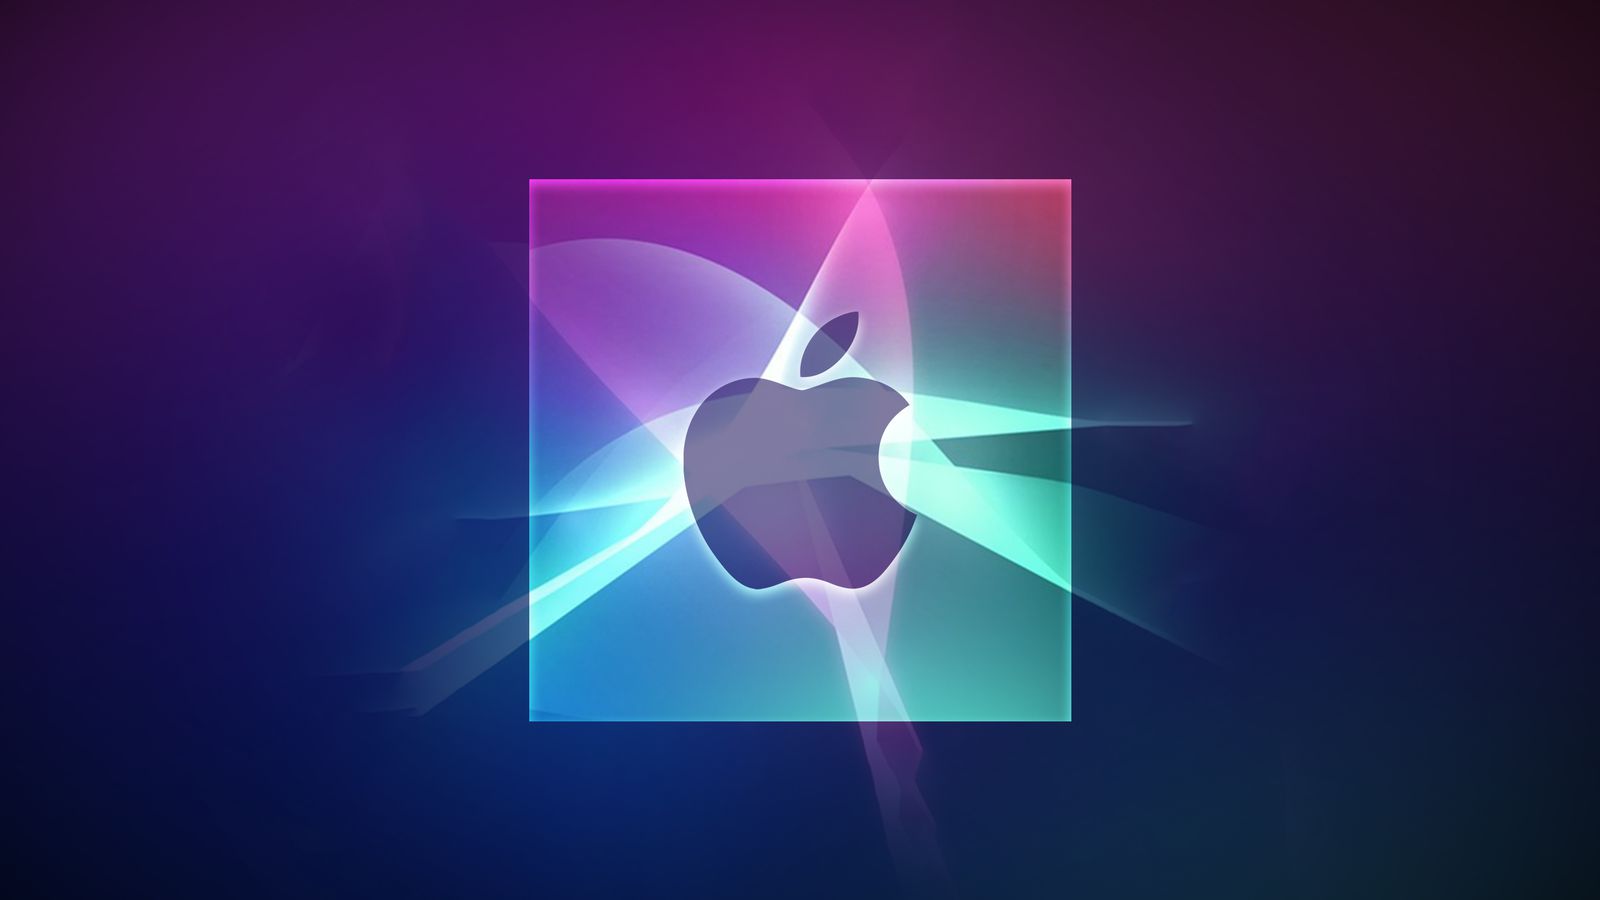 من iPhoneIslam.com، شعار Apple على خلفية متدرجة من درجات اللون الأرجواني والأزرق، معززة بتأثيرات الضوء والظل، تم تسليط الضوء عليها في أخبار الهامش لأسبوع